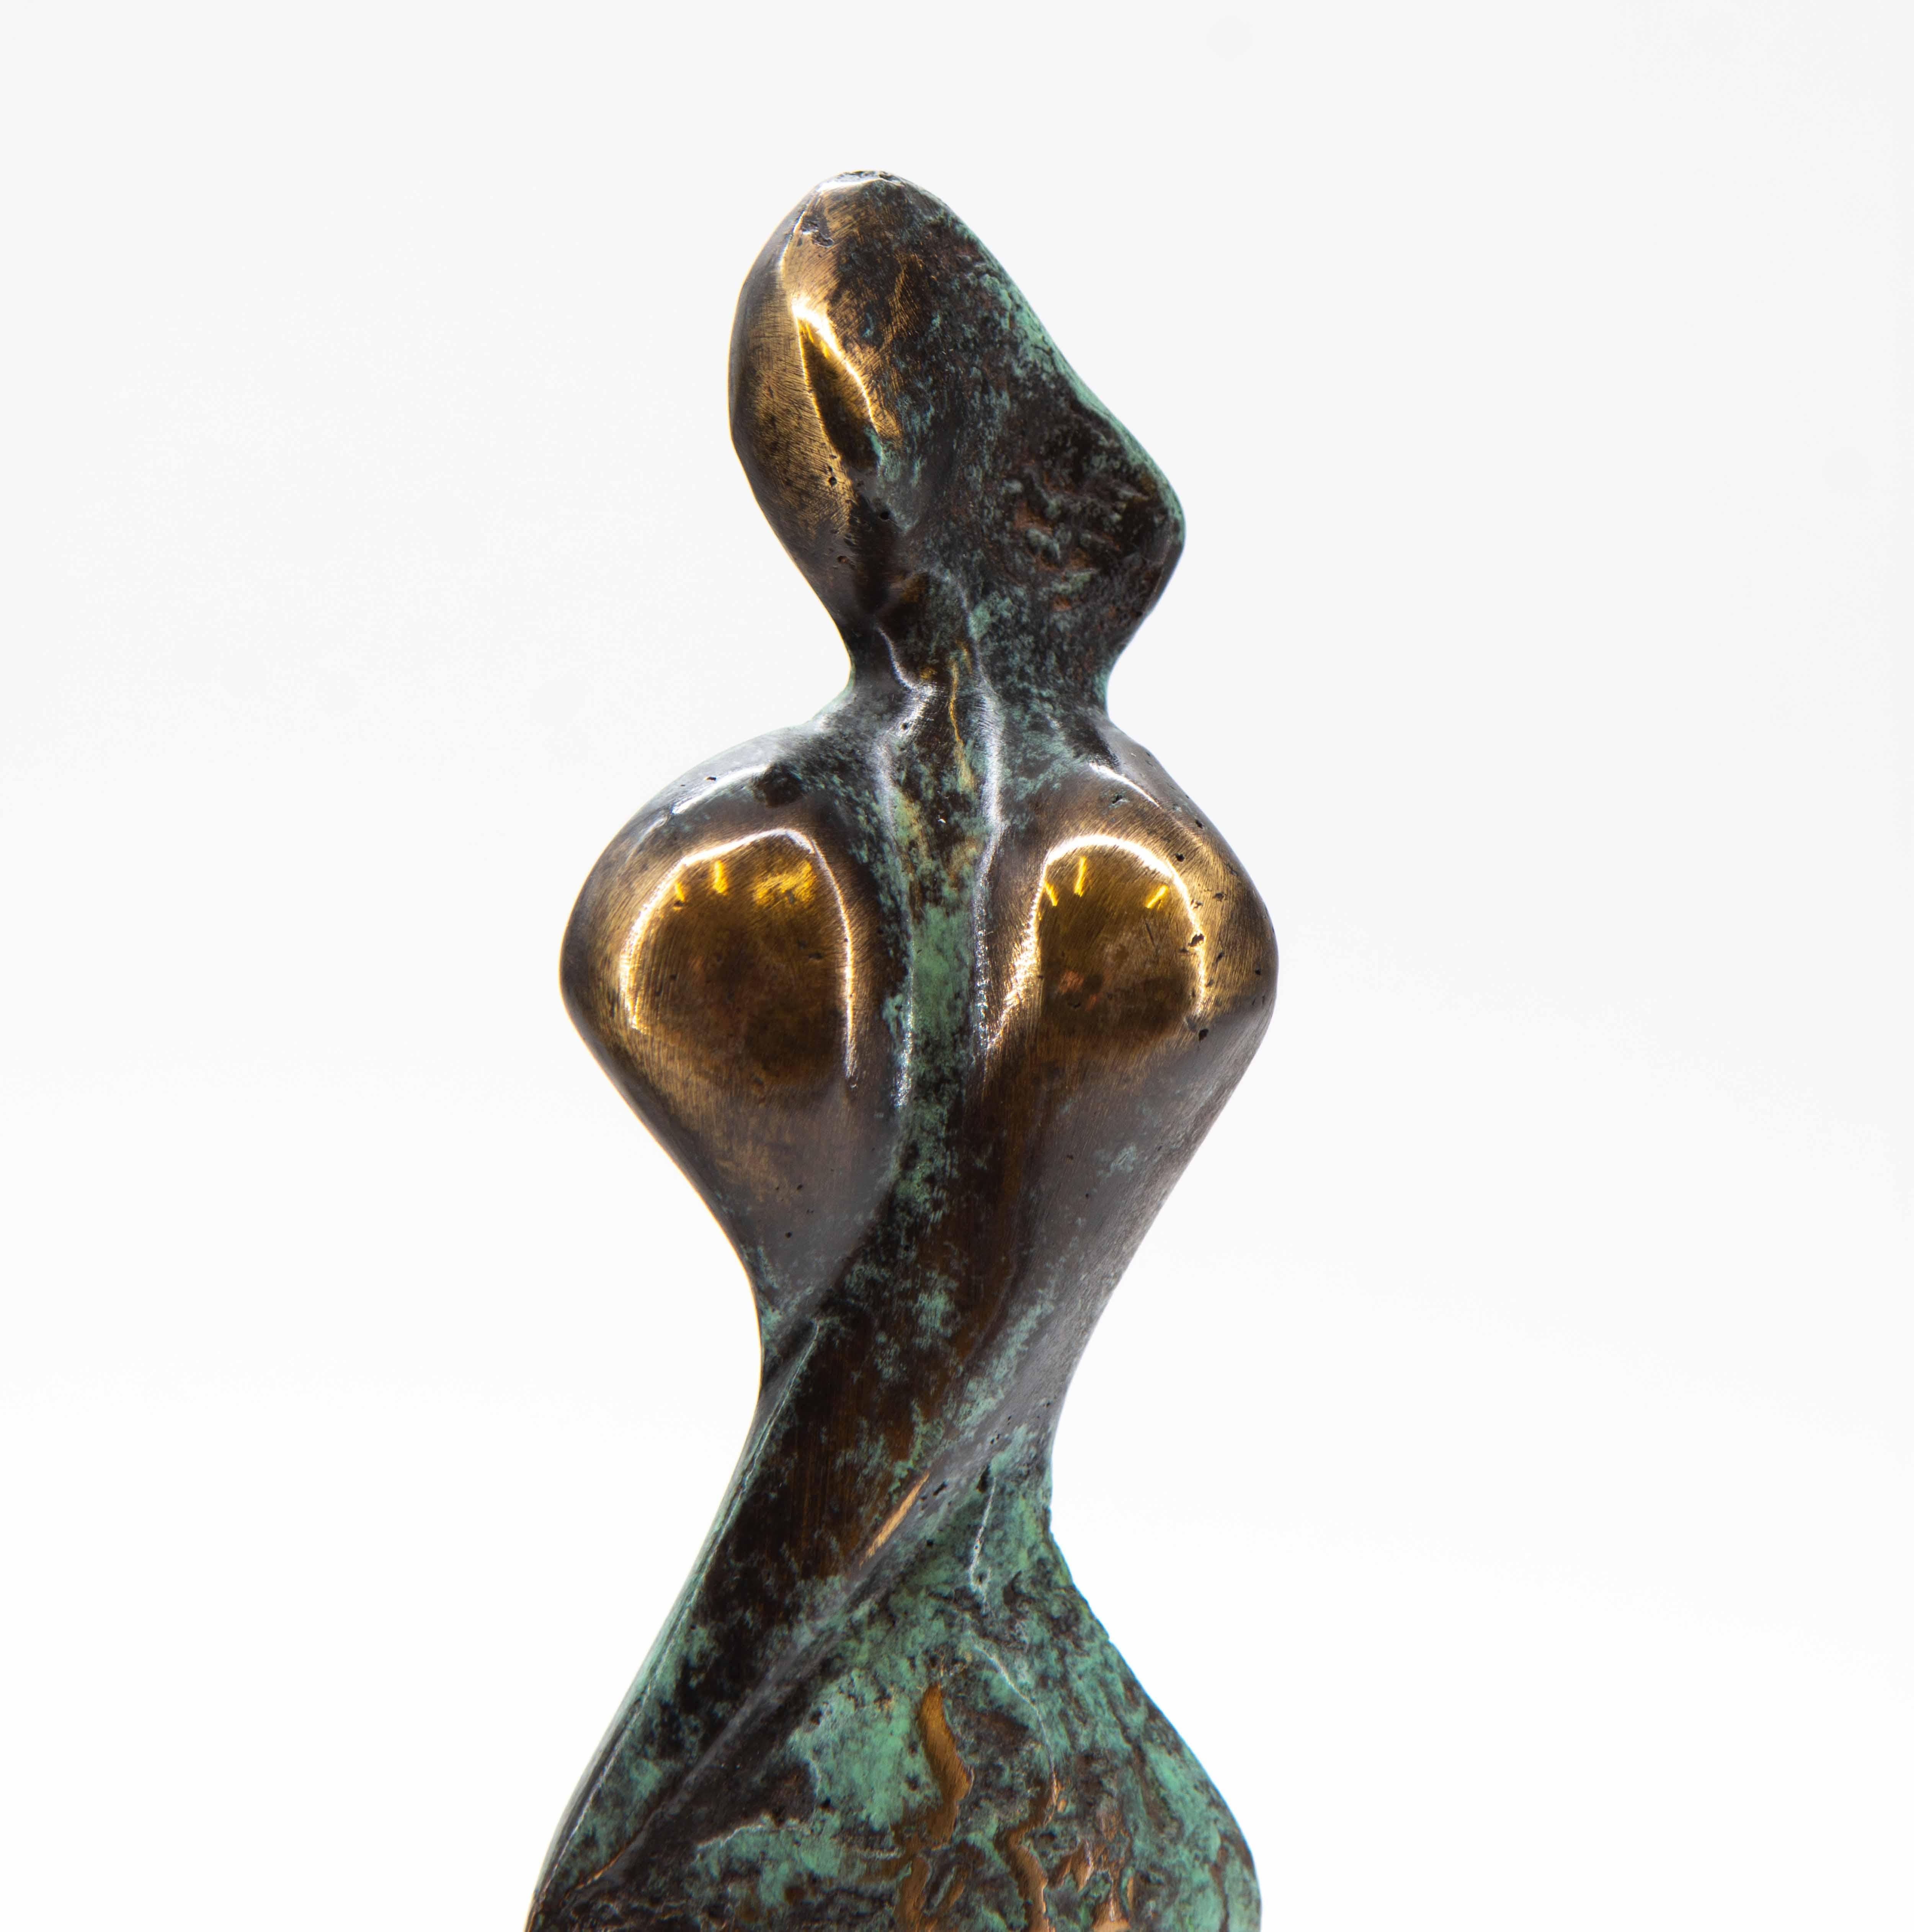 Statuette féminine abstraite en bronze, partiellement polie avec des accents verts patinés, du sculpteur polonais Stanislaw Wysocki. (b. 1949). Signé par l'artiste, portant la mention 